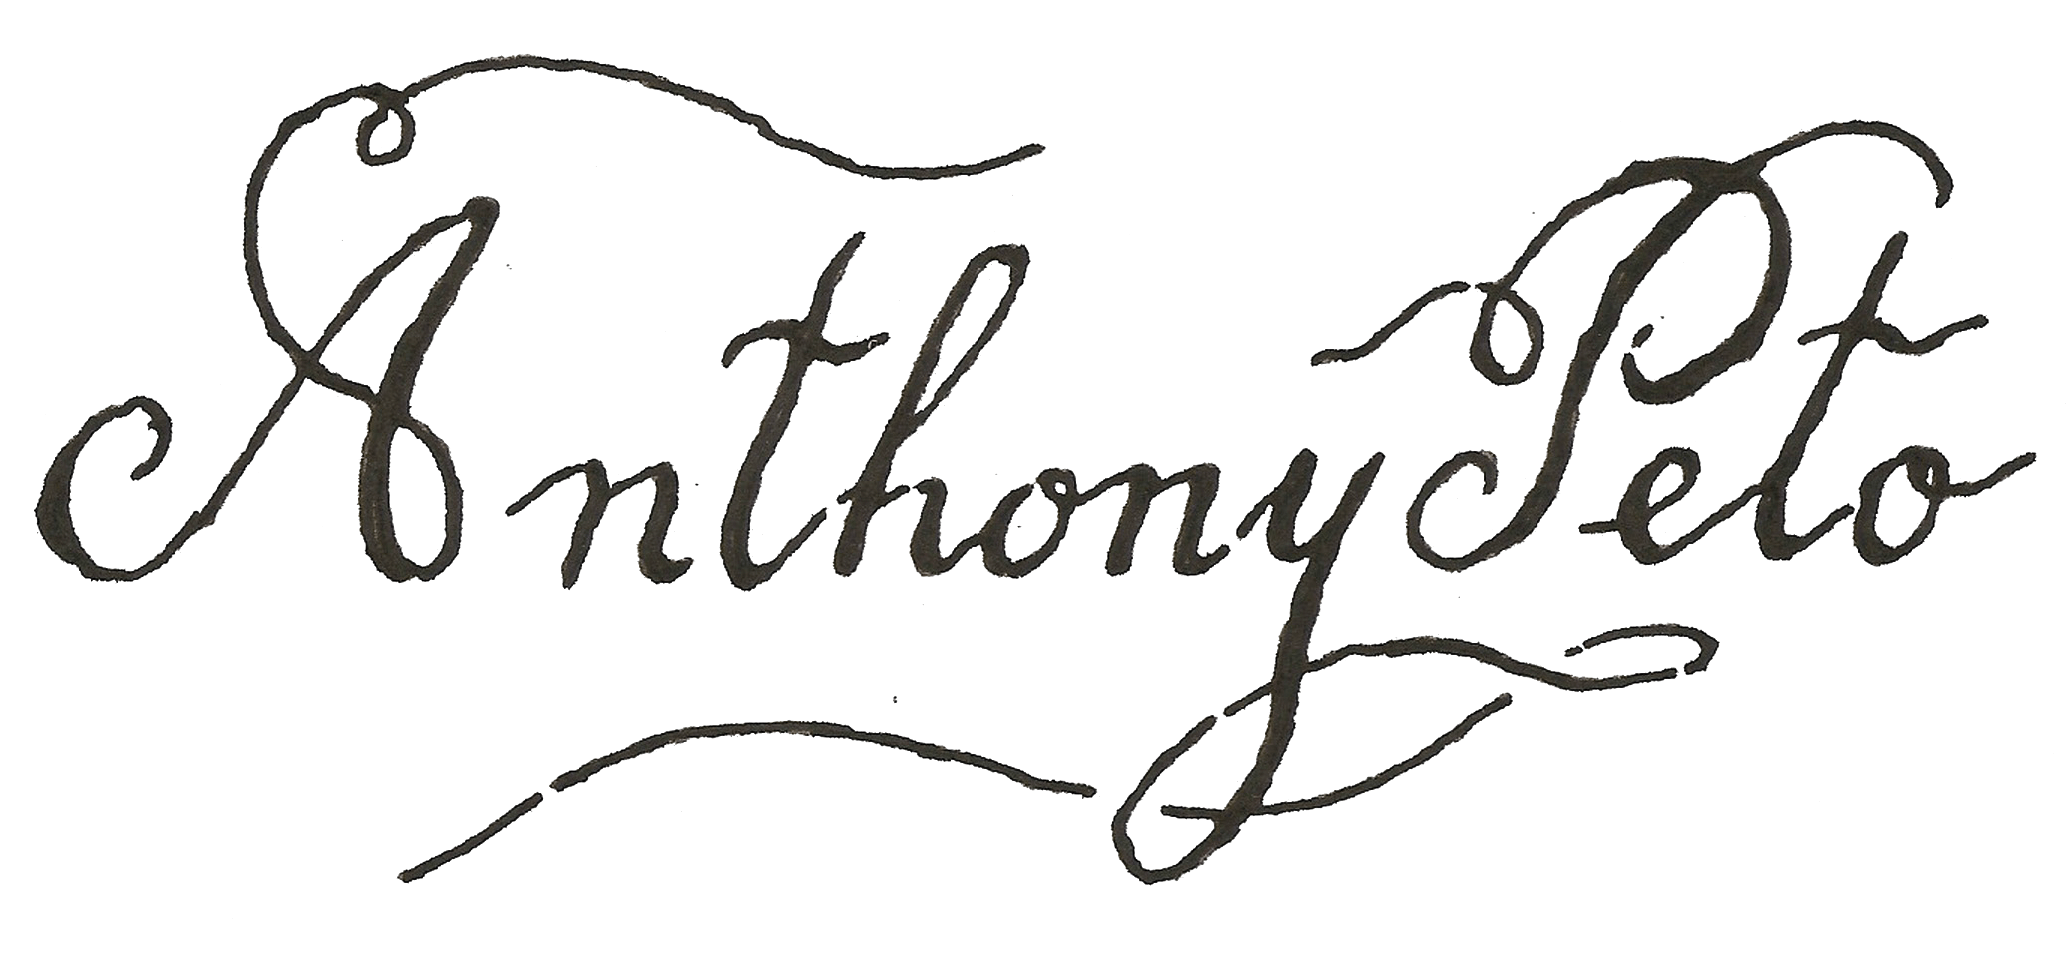 Anthony Peto - Anthony Peto